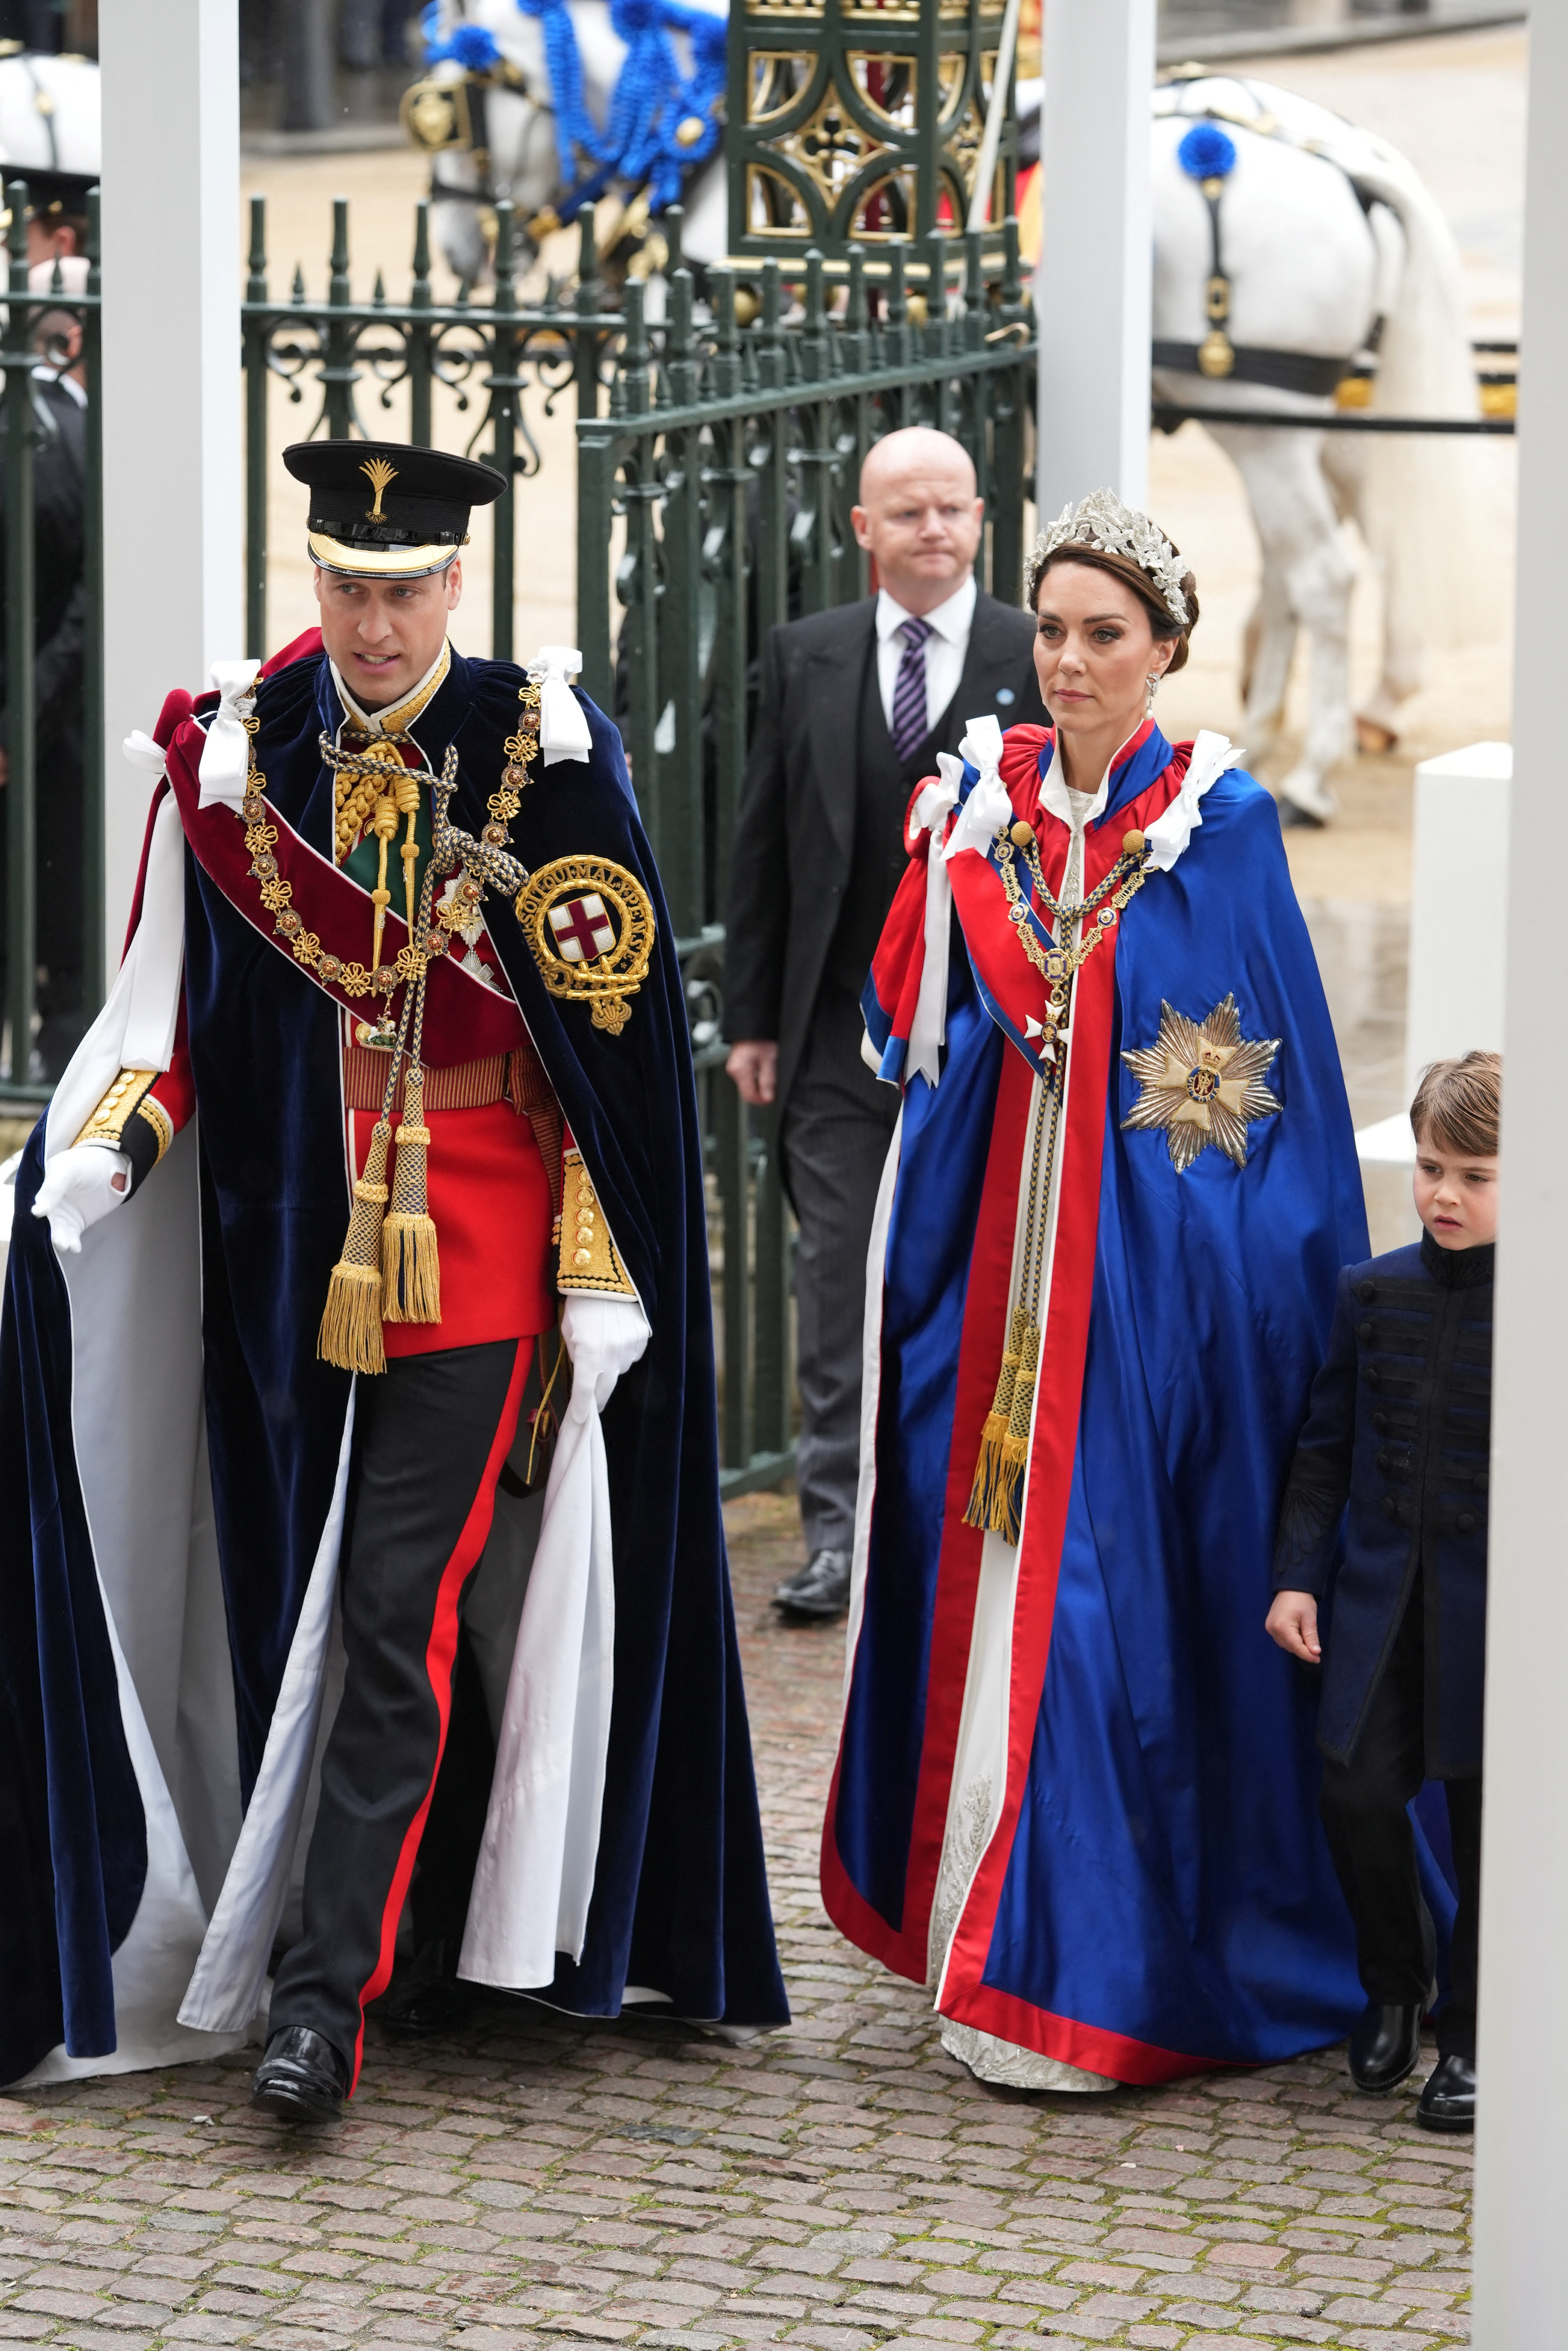 Los príncipes William y Kate arribaron con sus vestidos reales a la gran ceremonia de coronación. ( Dan Charity/Pool via REUTERS)